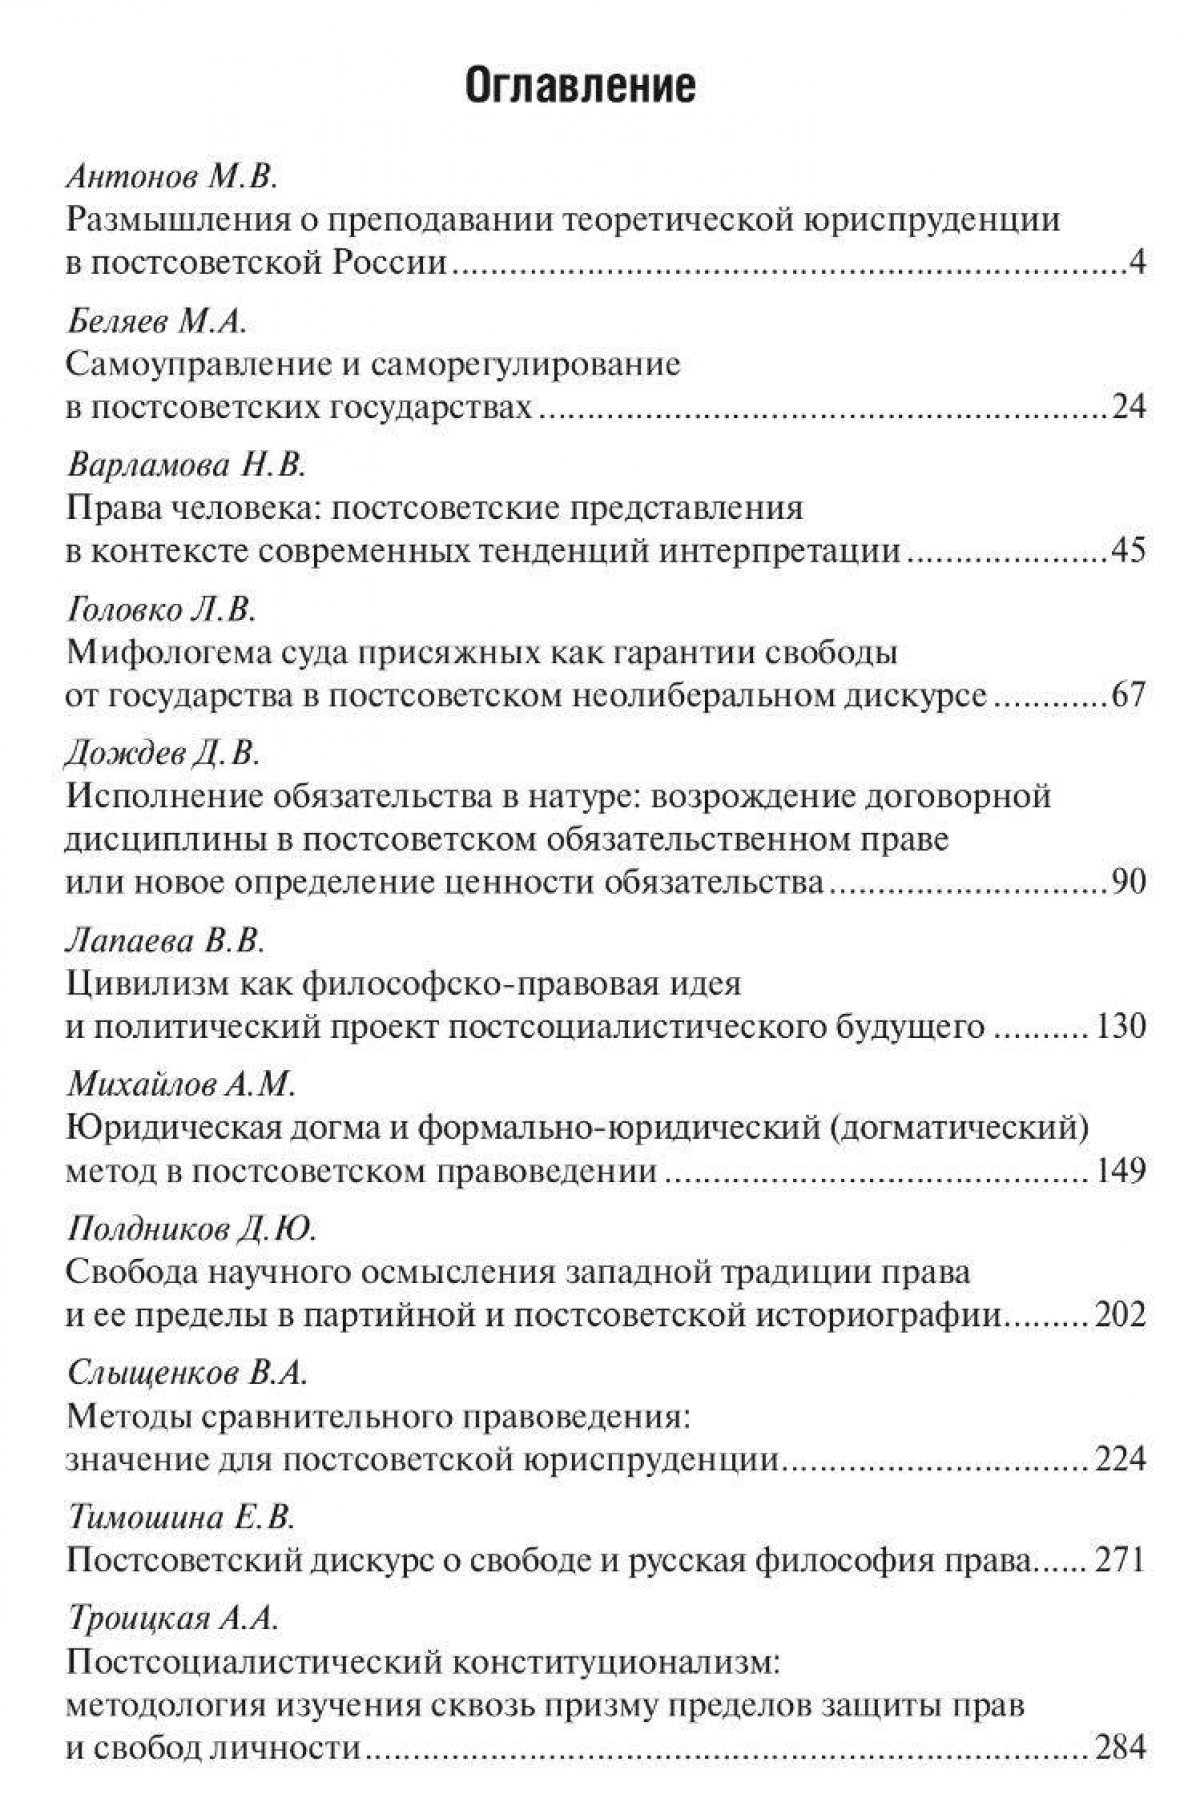 Вышел сборник статей «Проблемы постсоветской теории и философии права: перспективы свободного общества» по итогам весенней конференции в Шанинке.